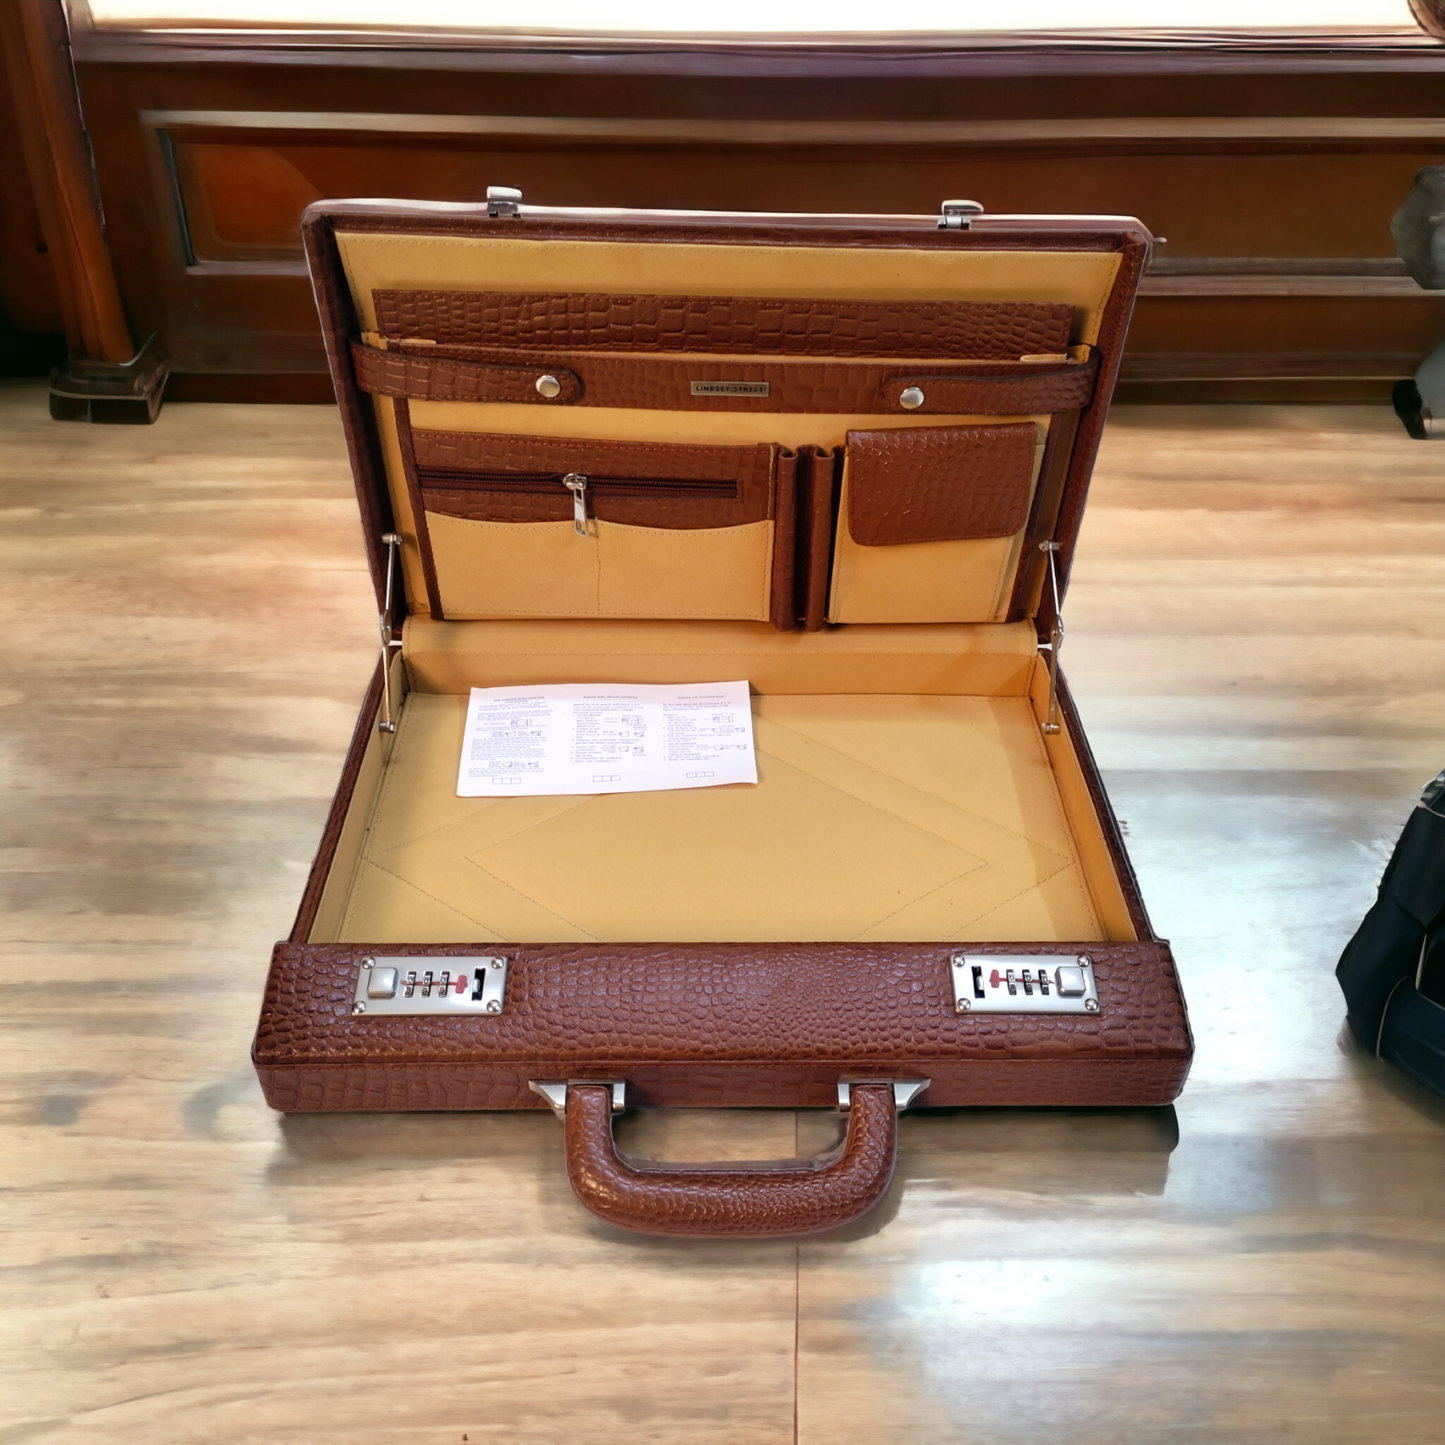 Leather Briefcase for Men's Leather Handbag for Men and Women Laptop Bag MacBook Bag Slim Attache Briefcase Leather Office Handbag